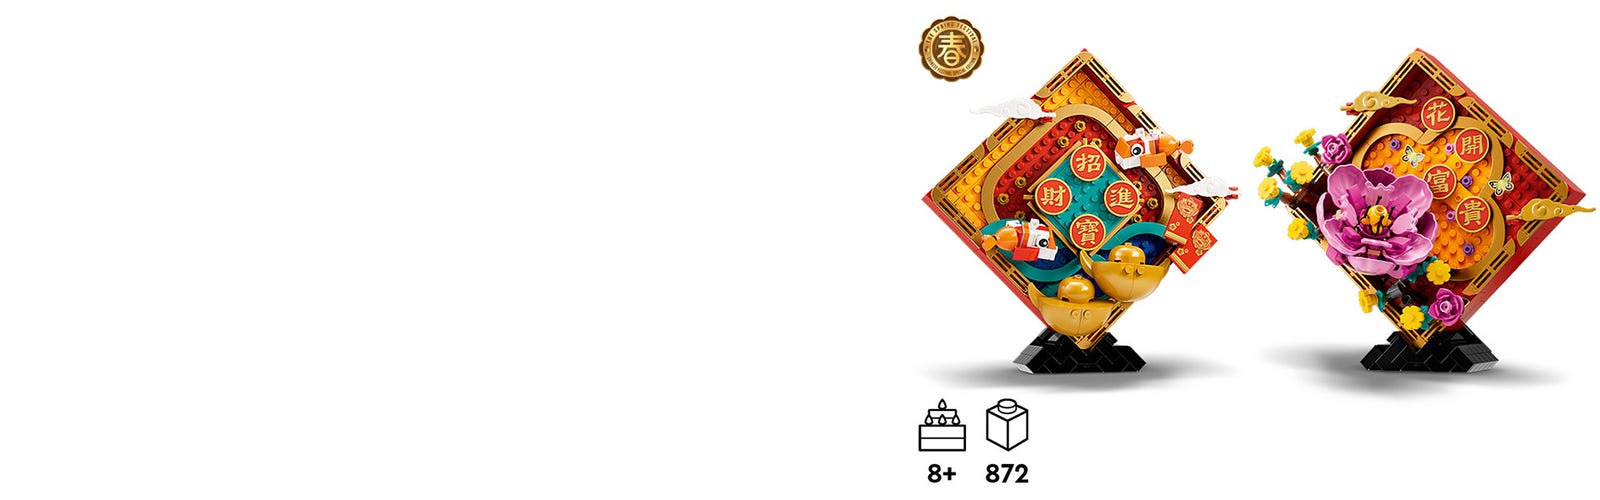 LEGO Saisonnier 80110 pas cher, Décoration du Nouvel An lunaire